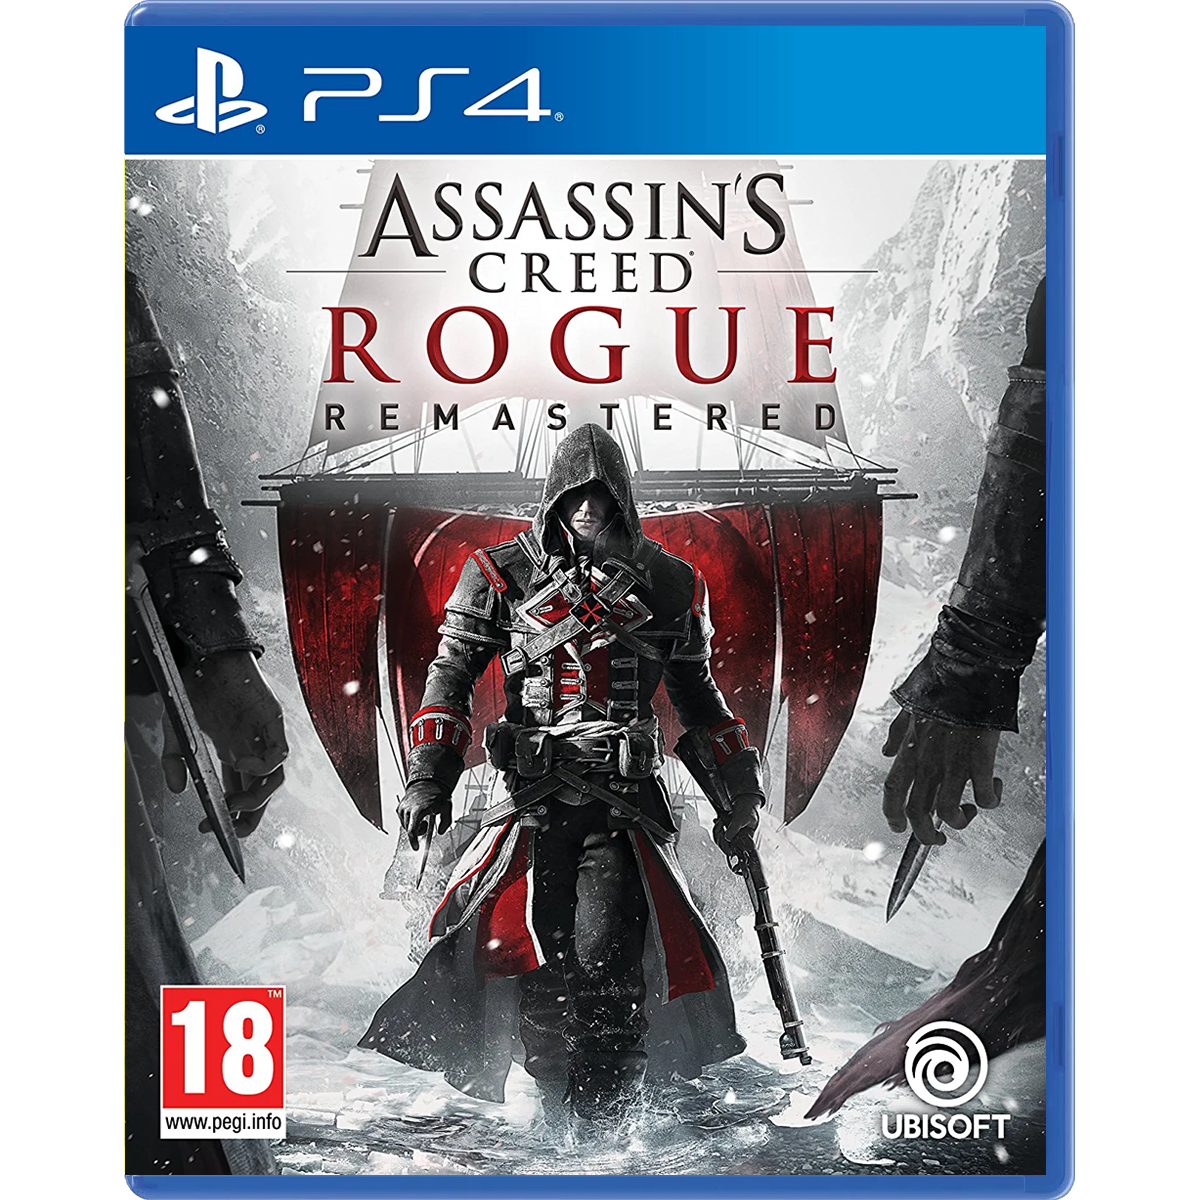 PS4 Assasin's Creed Rogue Remastared